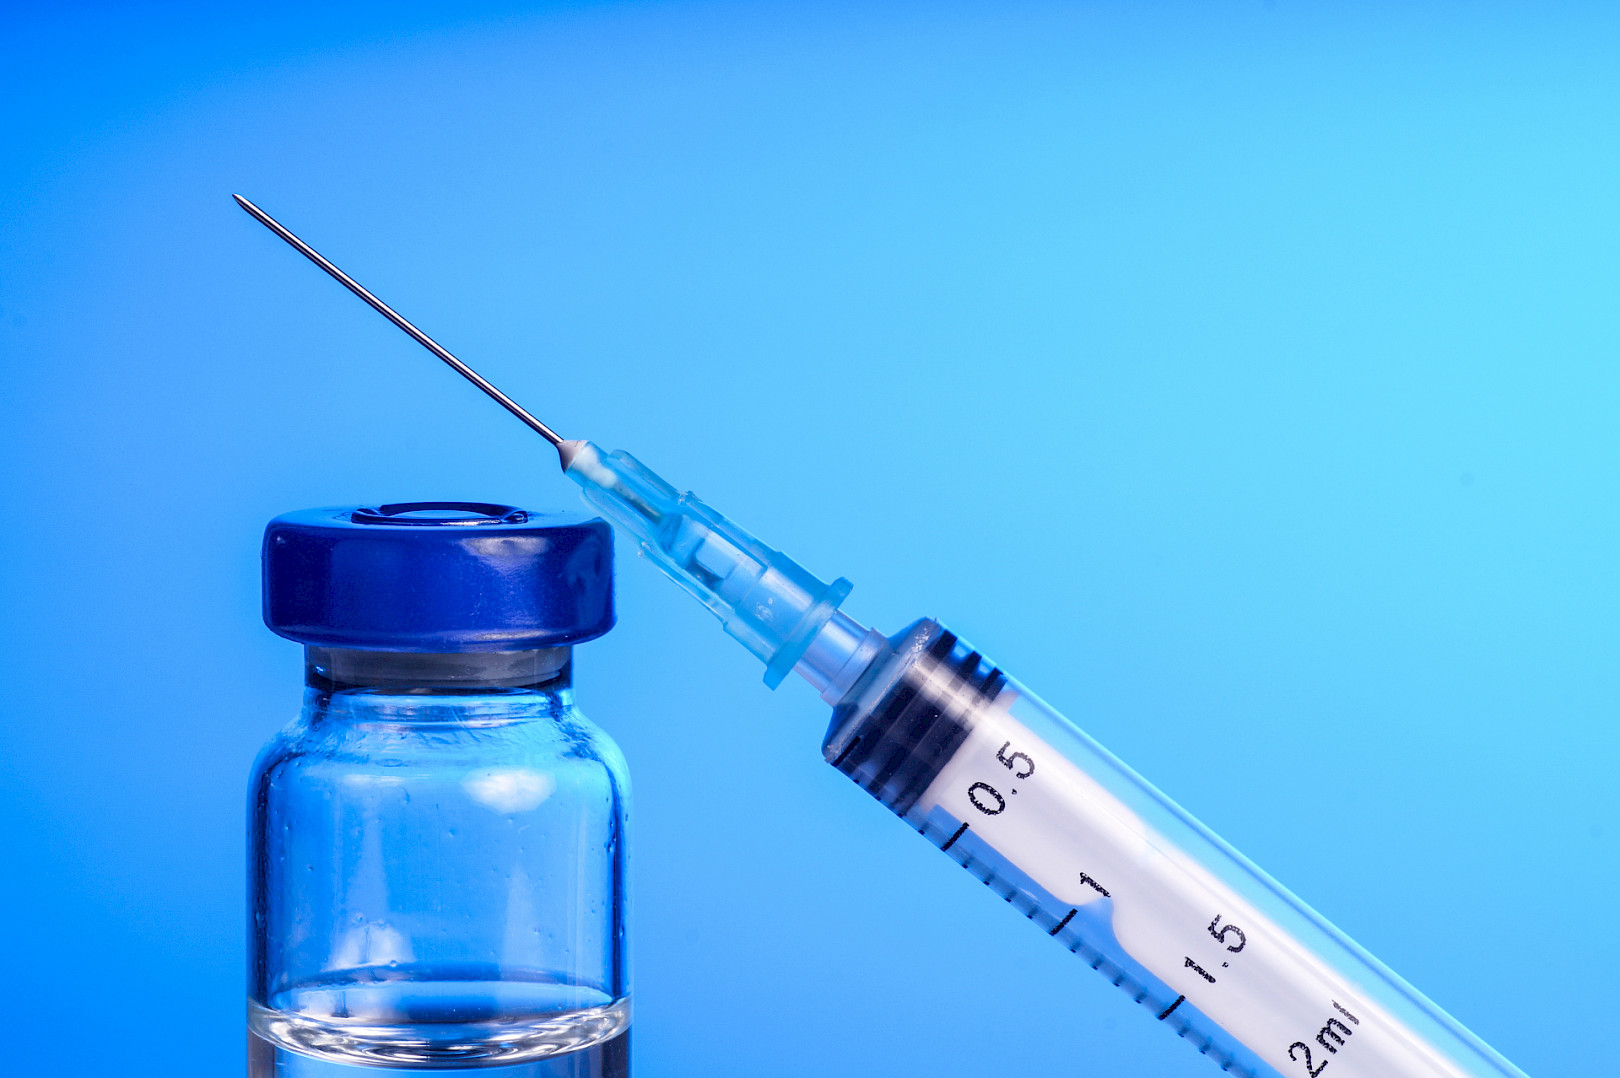 Dünya Sağlık Örgütü  70 aşı çalışmasının bulunduğu bilgisini paylaştı.